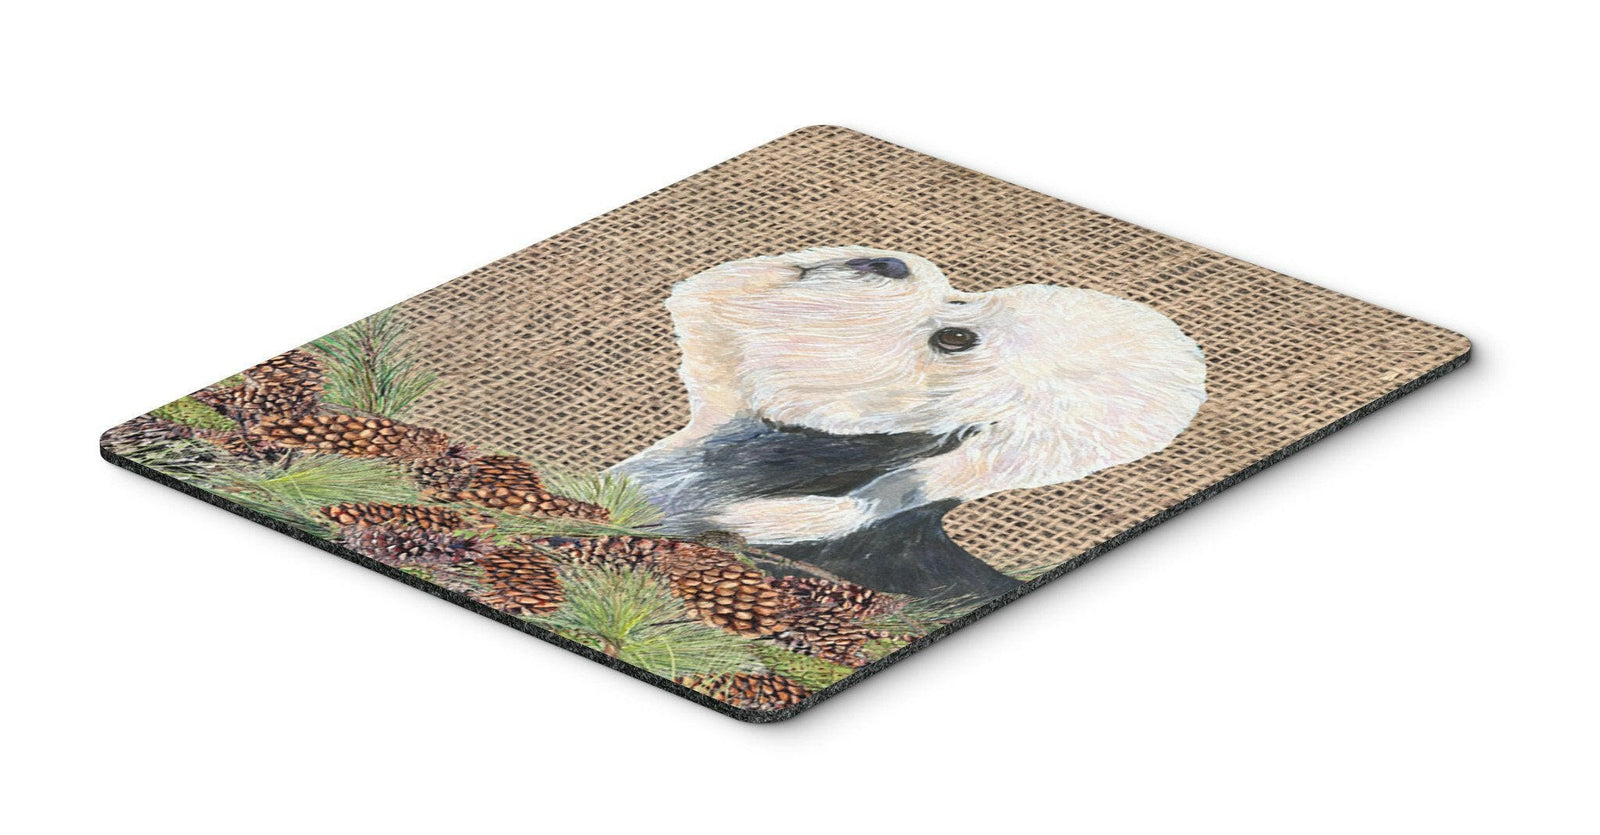 Dandie Dinmont Terrier Mouse Pad, Hot Pad or Trivet by Caroline's Treasures